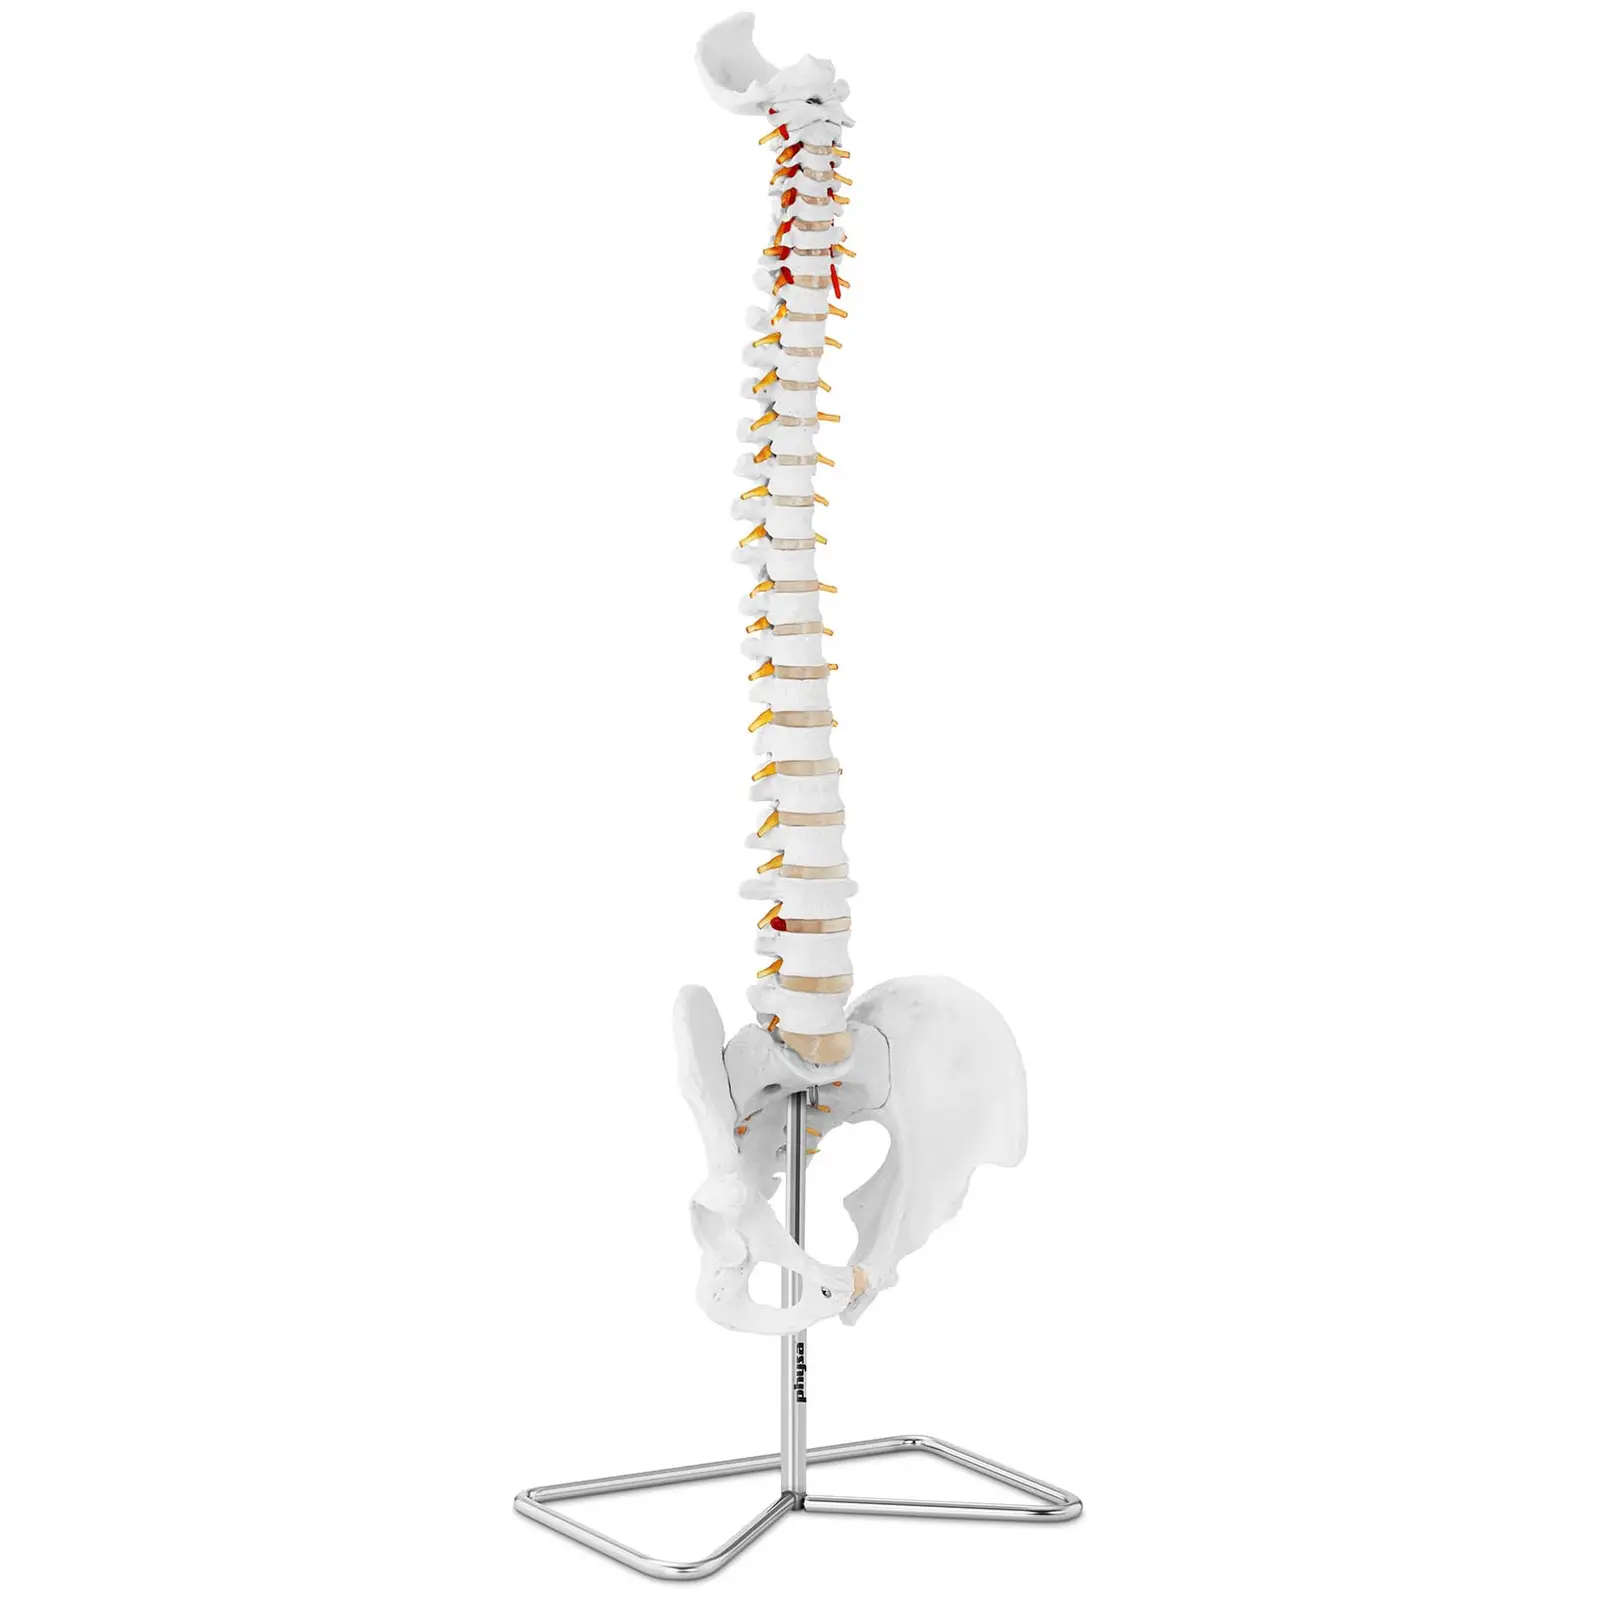 Modelo anatómico de columna vertebral con pelvis - tamaño natural